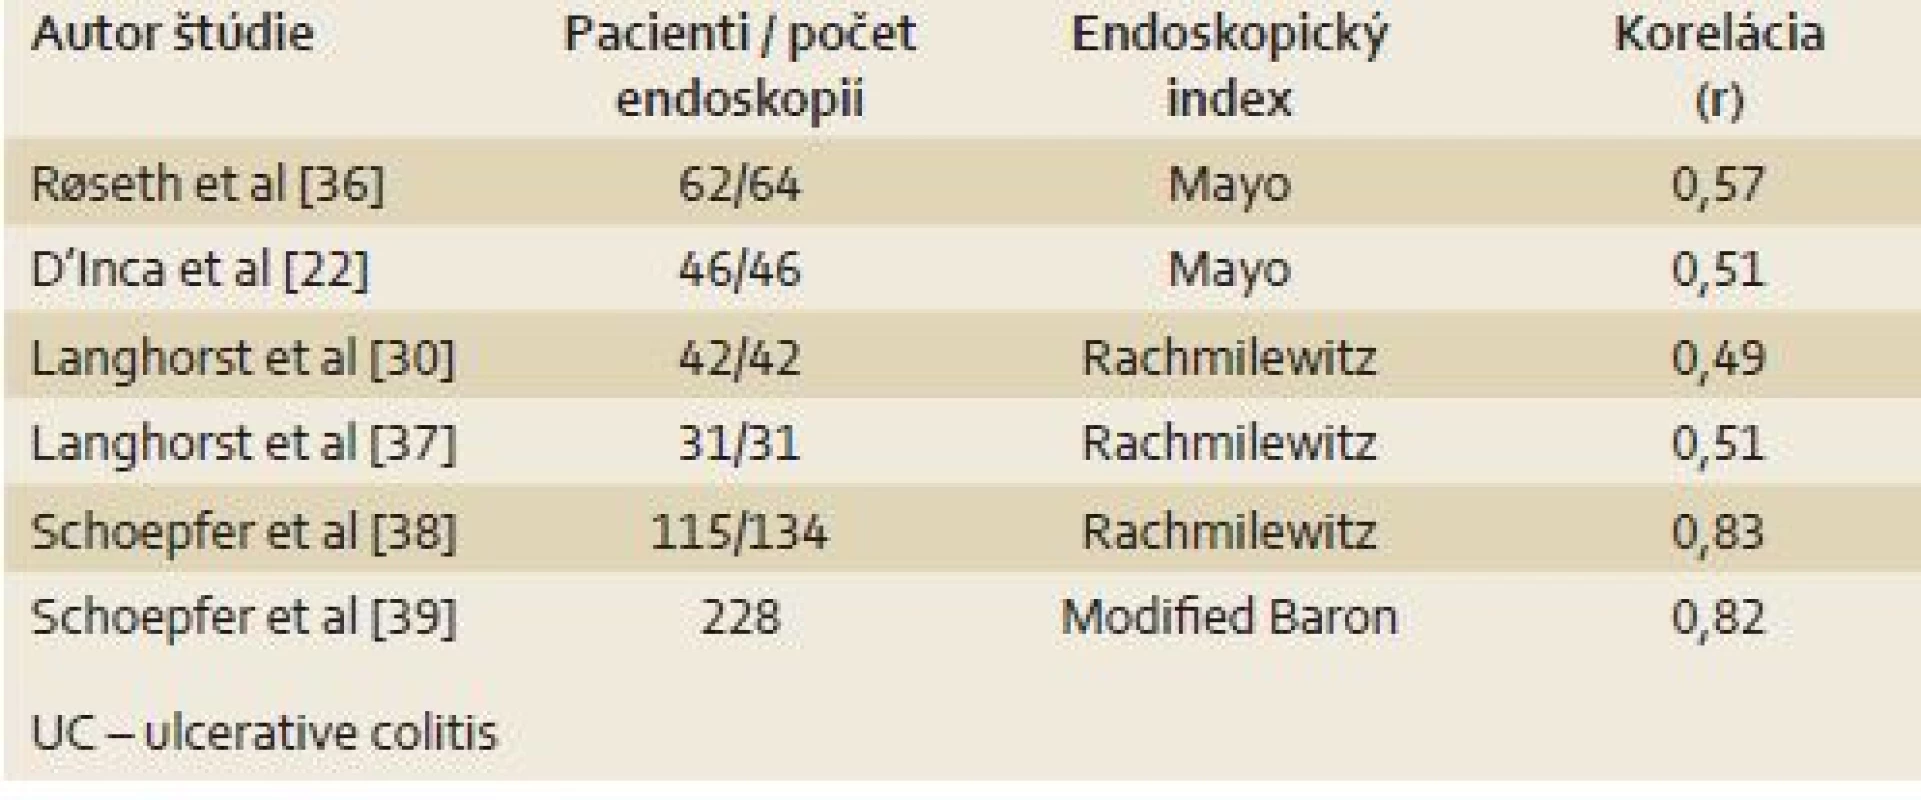 Korelácia fekálneho kalprotektínu s endoskopickým nálezom – UC.
Tab. 3. Correlation of fecal calprotectin with endoscopic findings – UC.